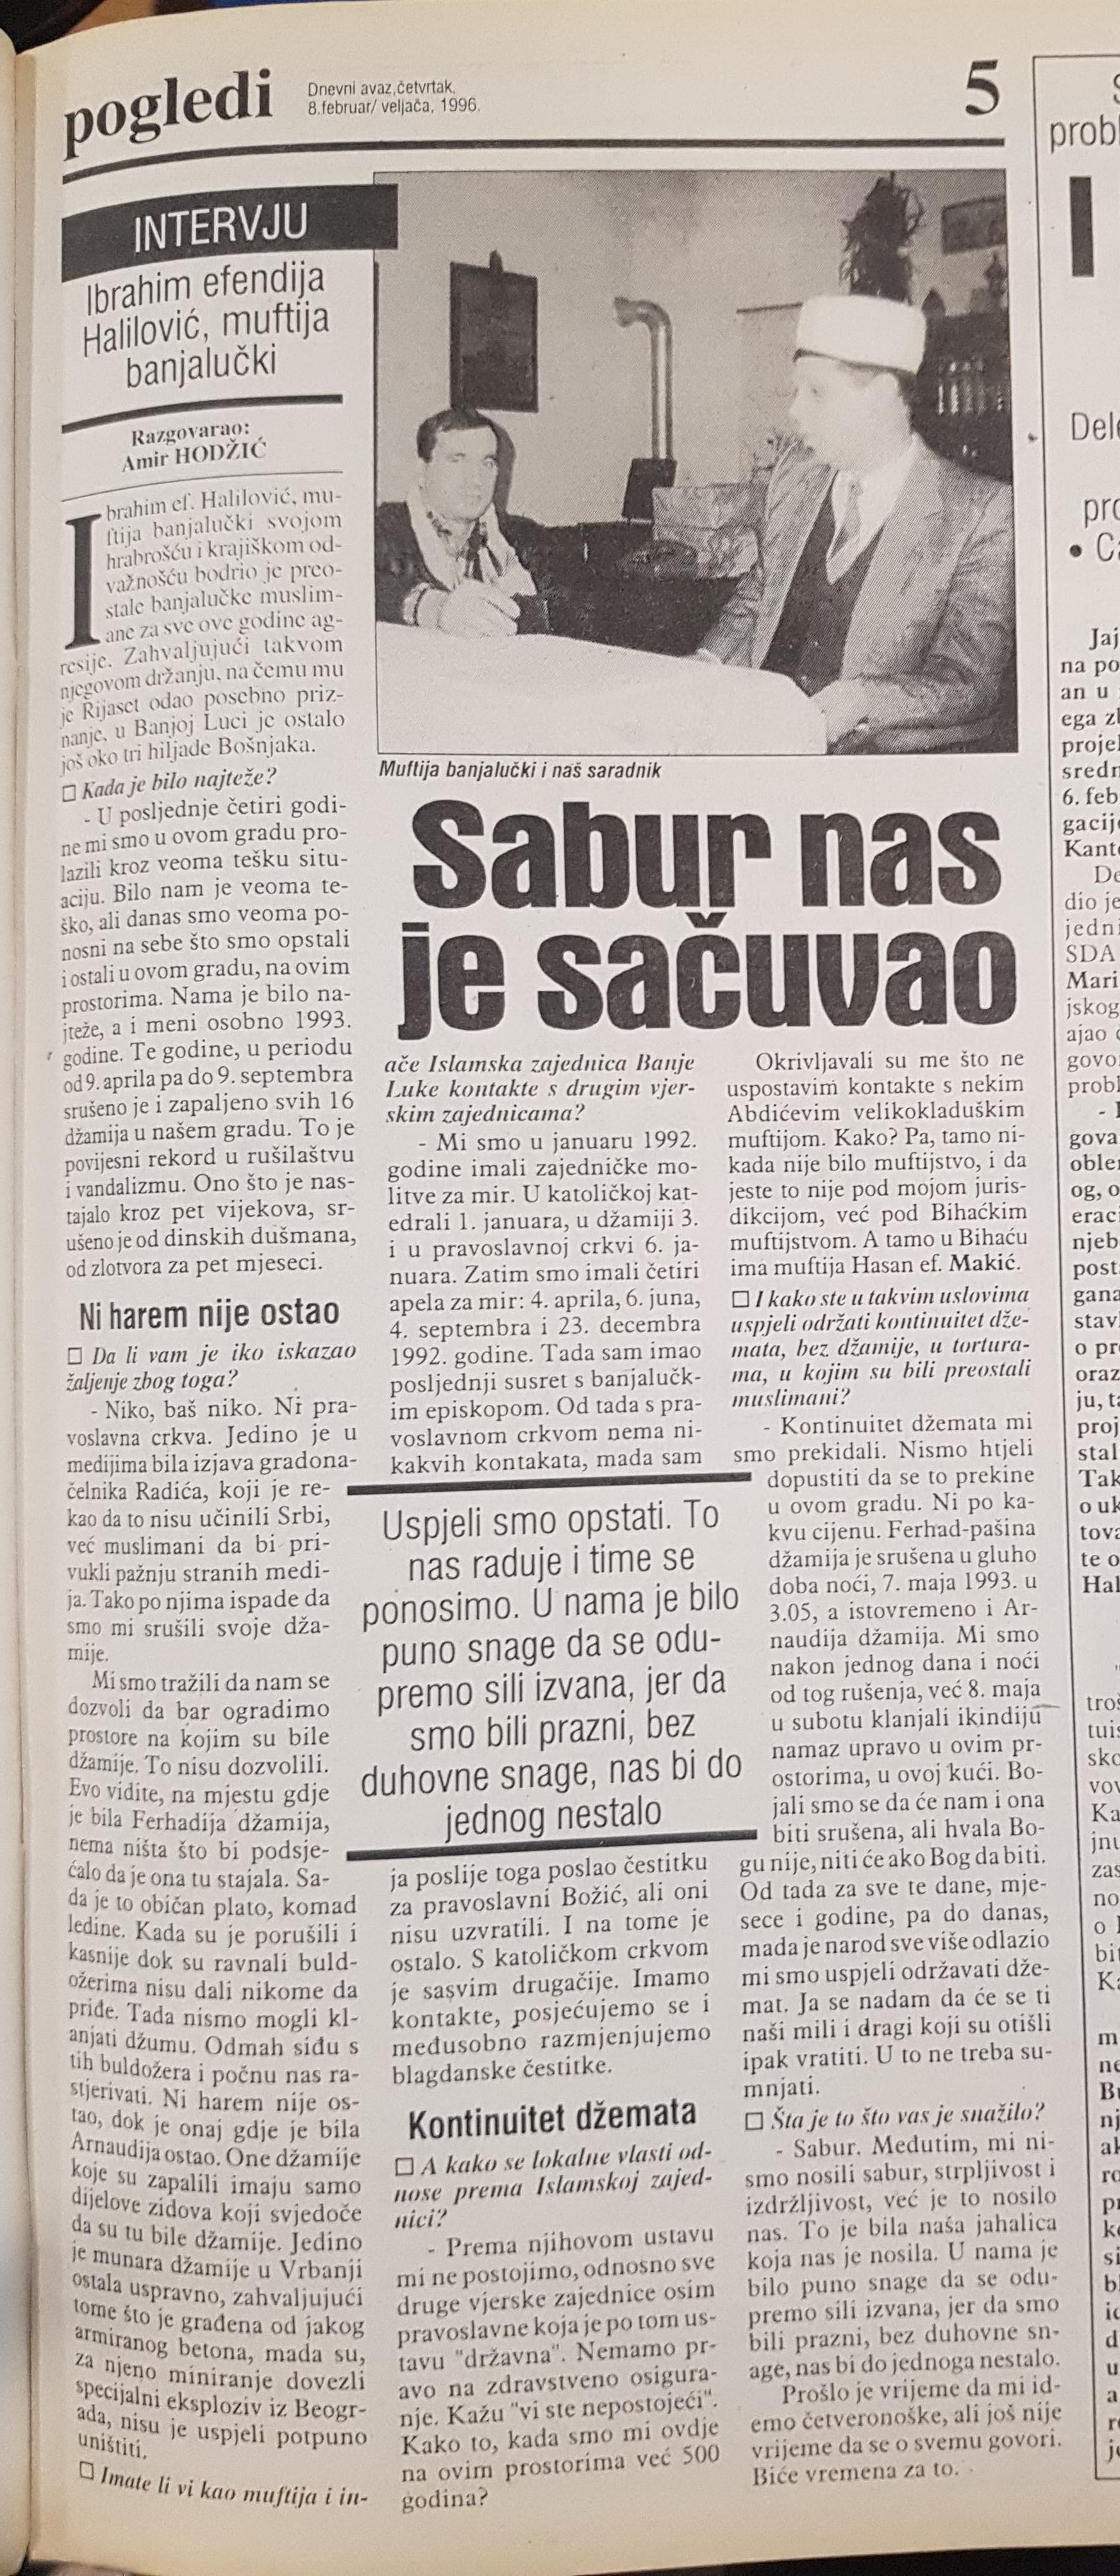 Intervju muftije banjalučkog, rahmetli Ibrahima ef. Halilovića za „Dnevni avaz” od 8. februara 1996. godine pod naslovom „Sabur nas je sačuvao” - Avaz